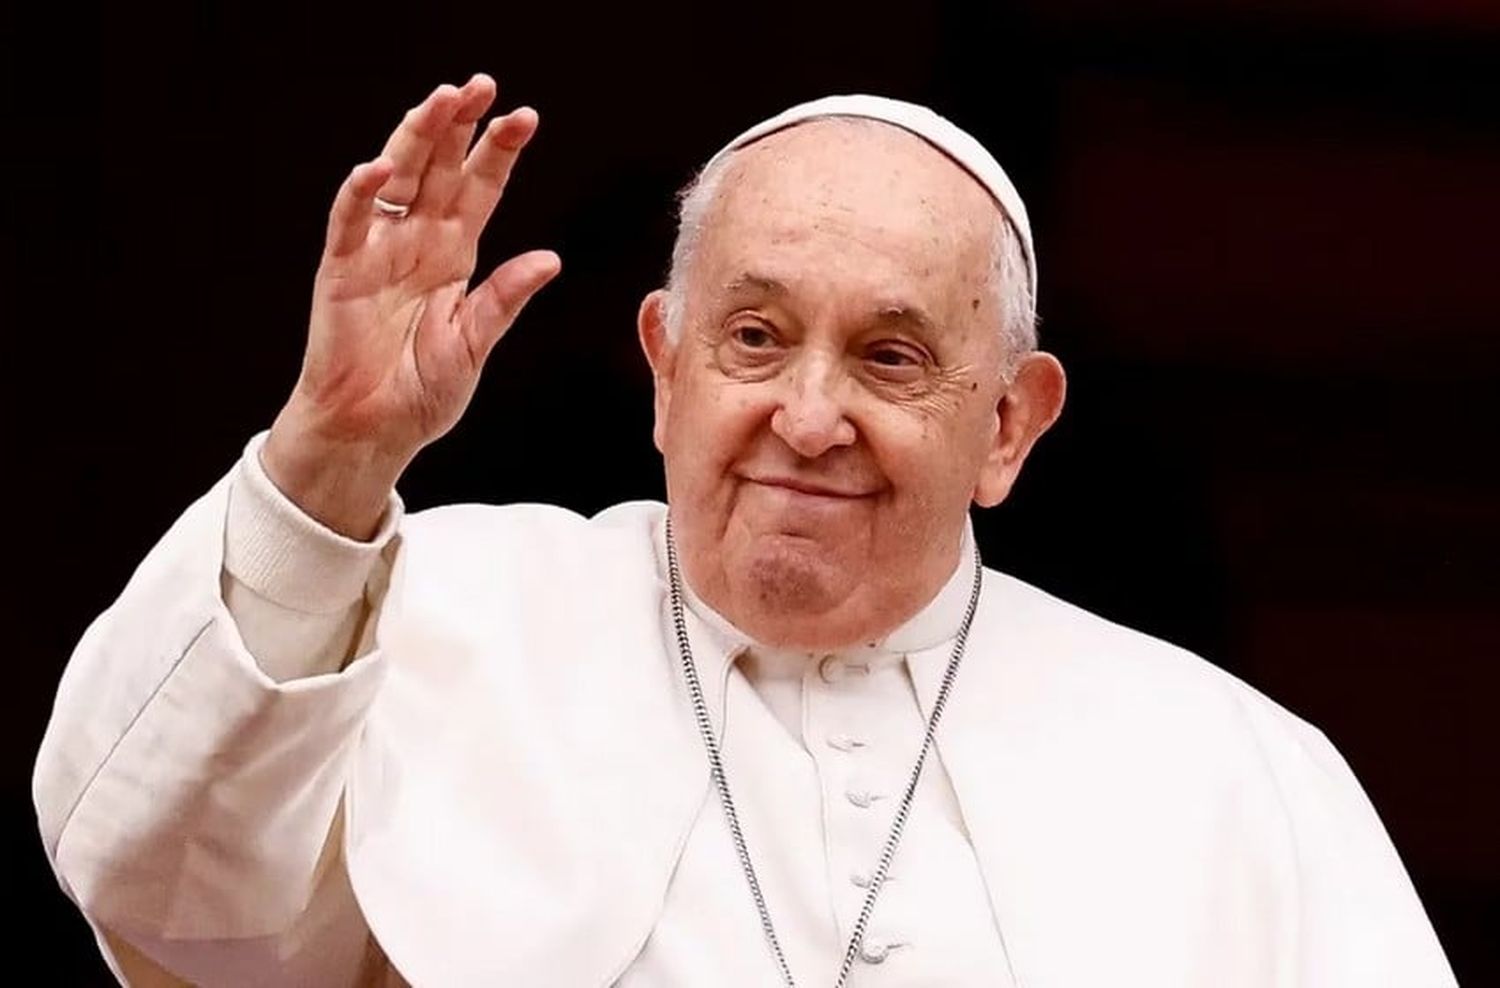 El Papa Francisco analiza venir a la Argentina durante el segundo semestre del año